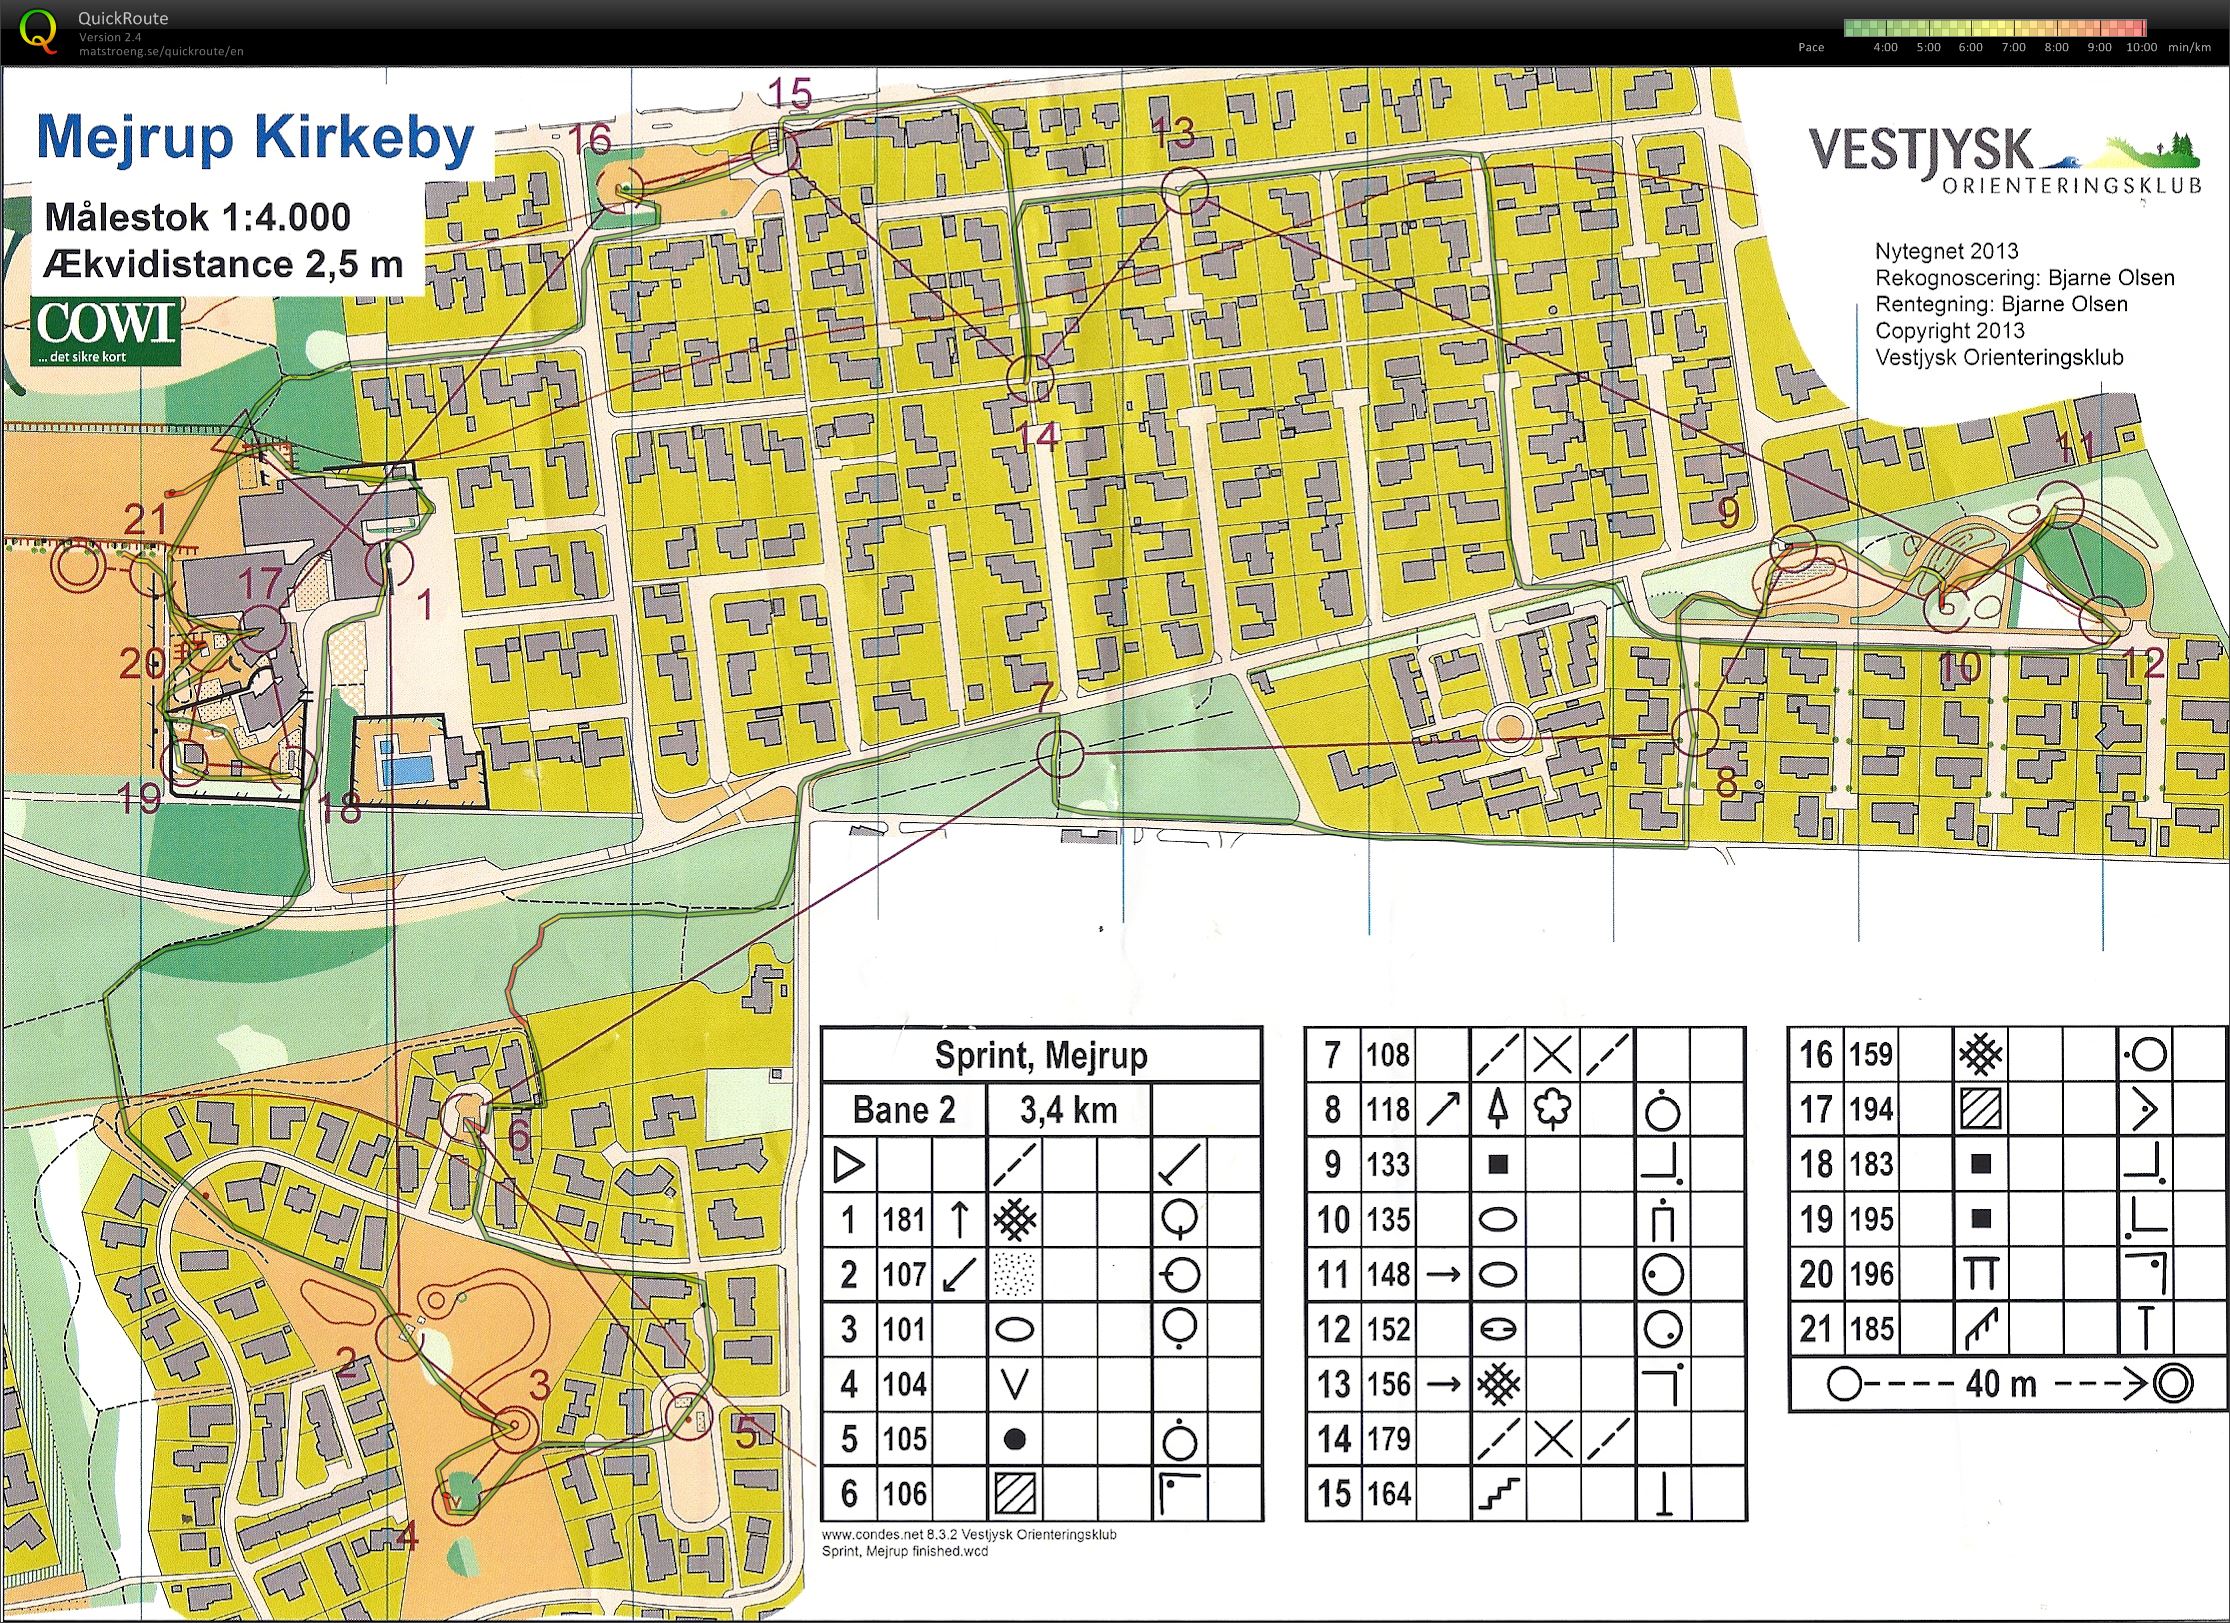 Vestjysk 2 dages 2013 sprint (2013-06-28)